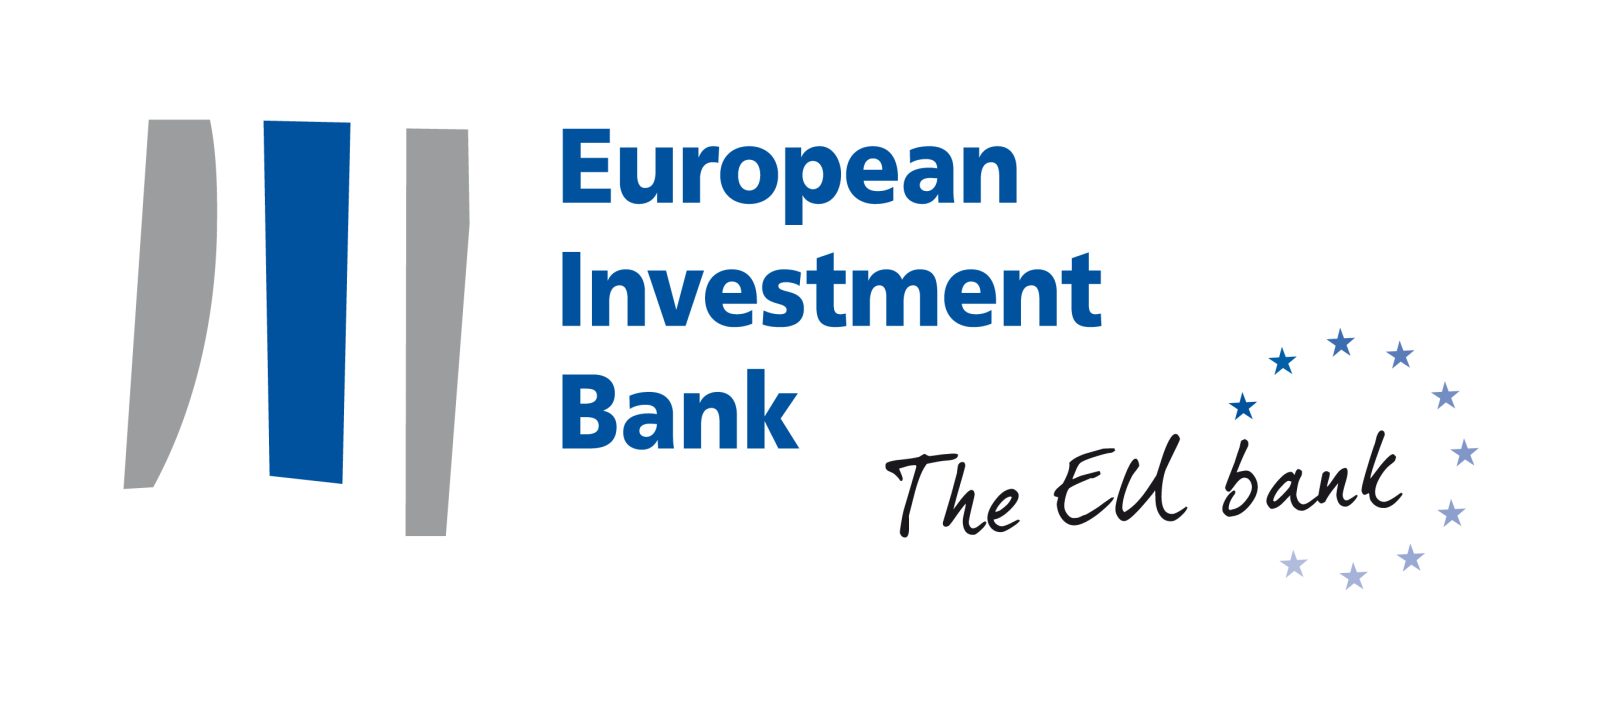 European investment Bank. Европейский инвестиционный банк